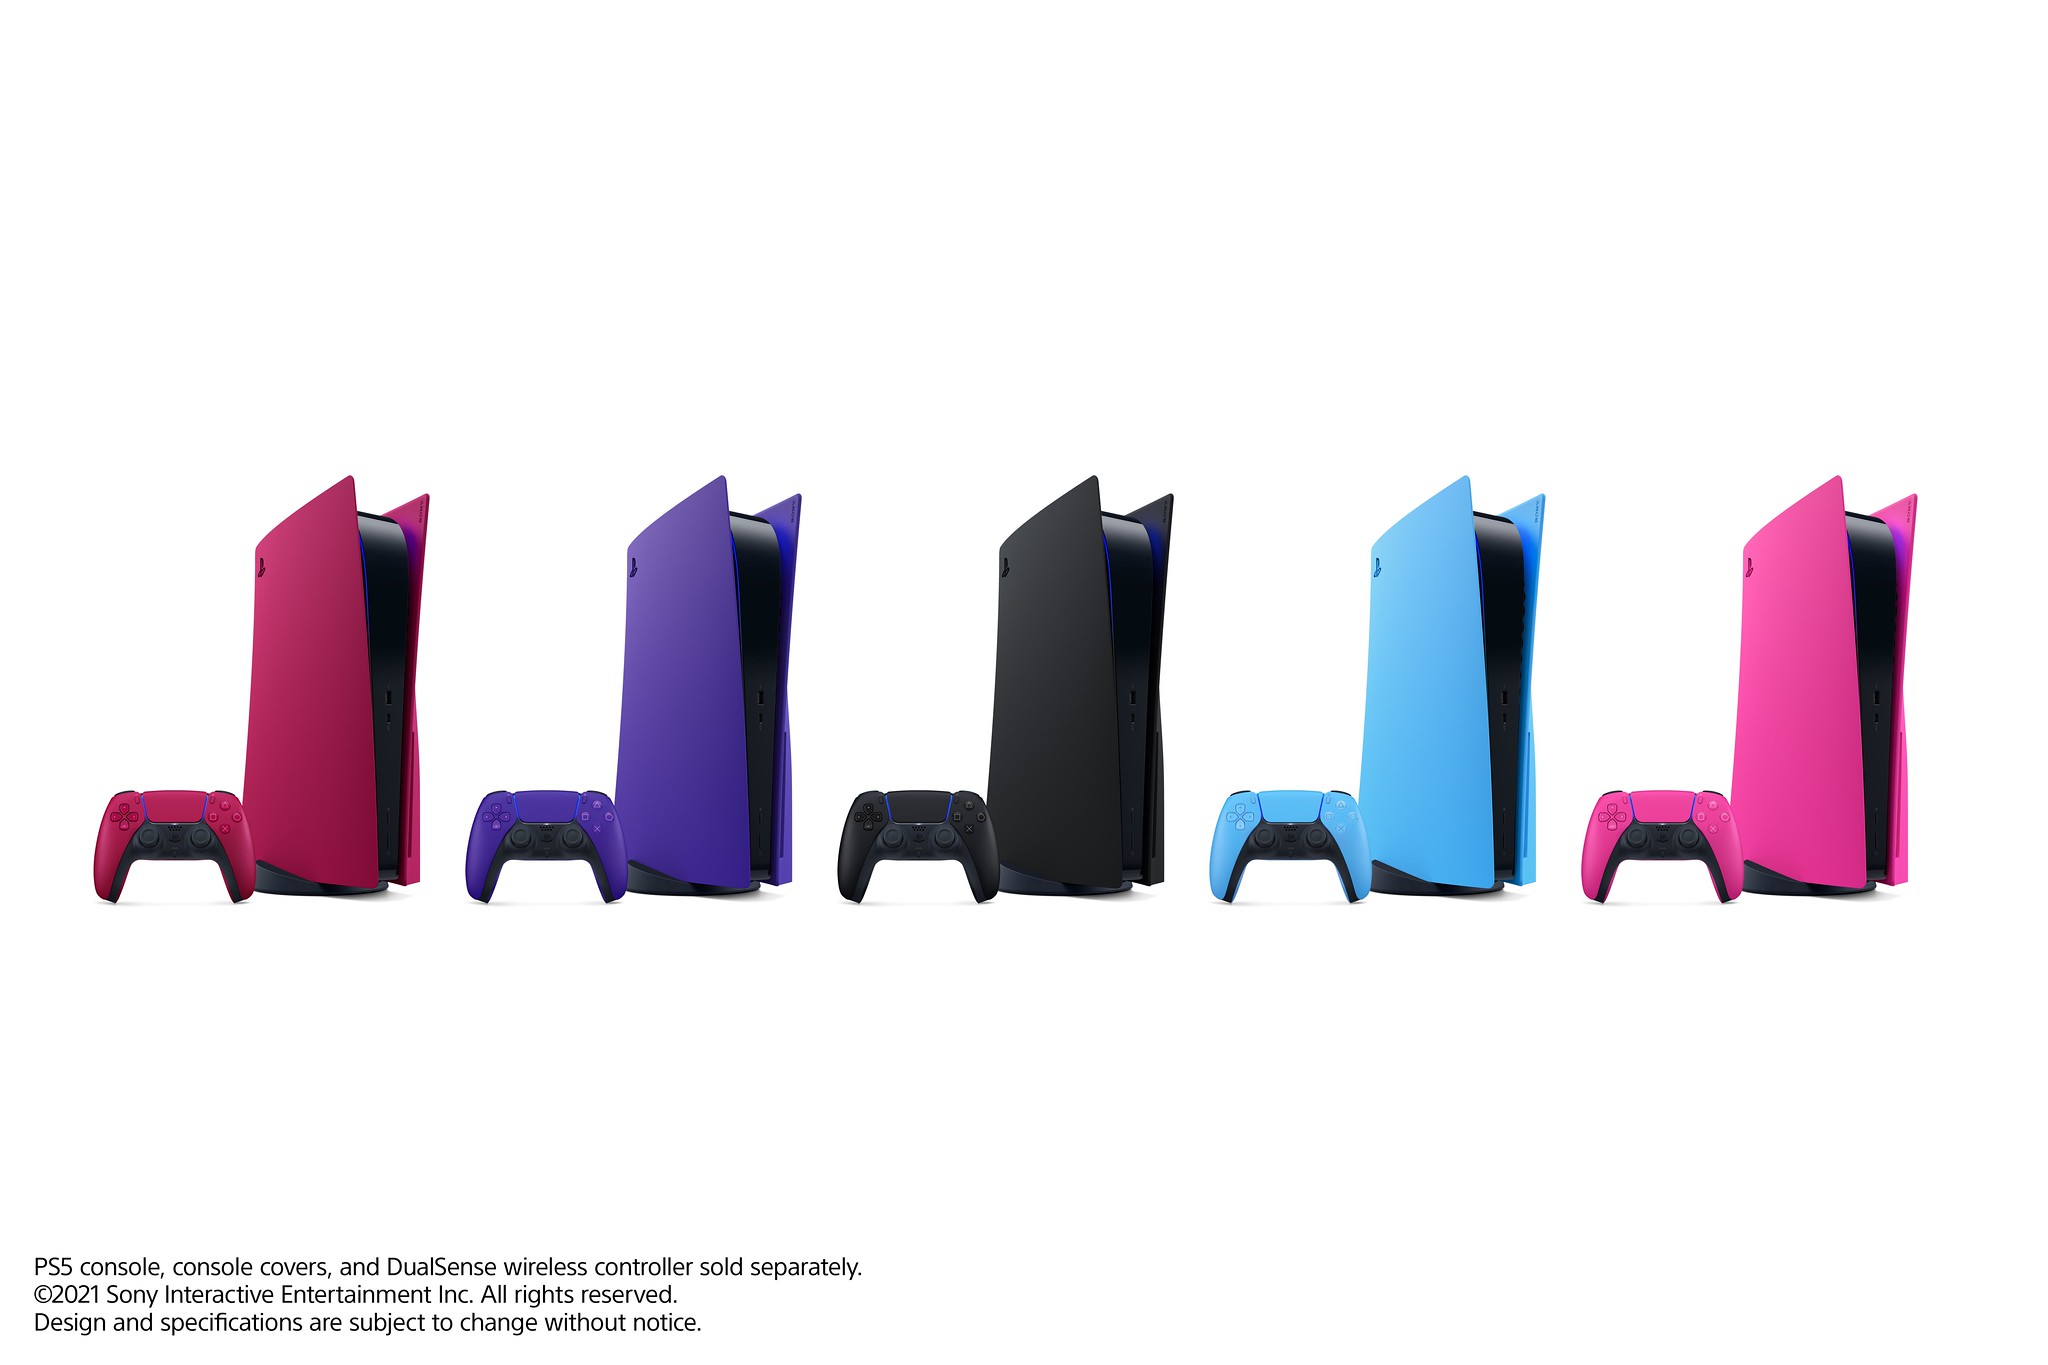 51742865997 431c55fe85 k - Neue Farben für den DualSense Wireless-Controller erscheinen nächsten Monat, gefolgt von neuen PS5-Konsolen-Covern